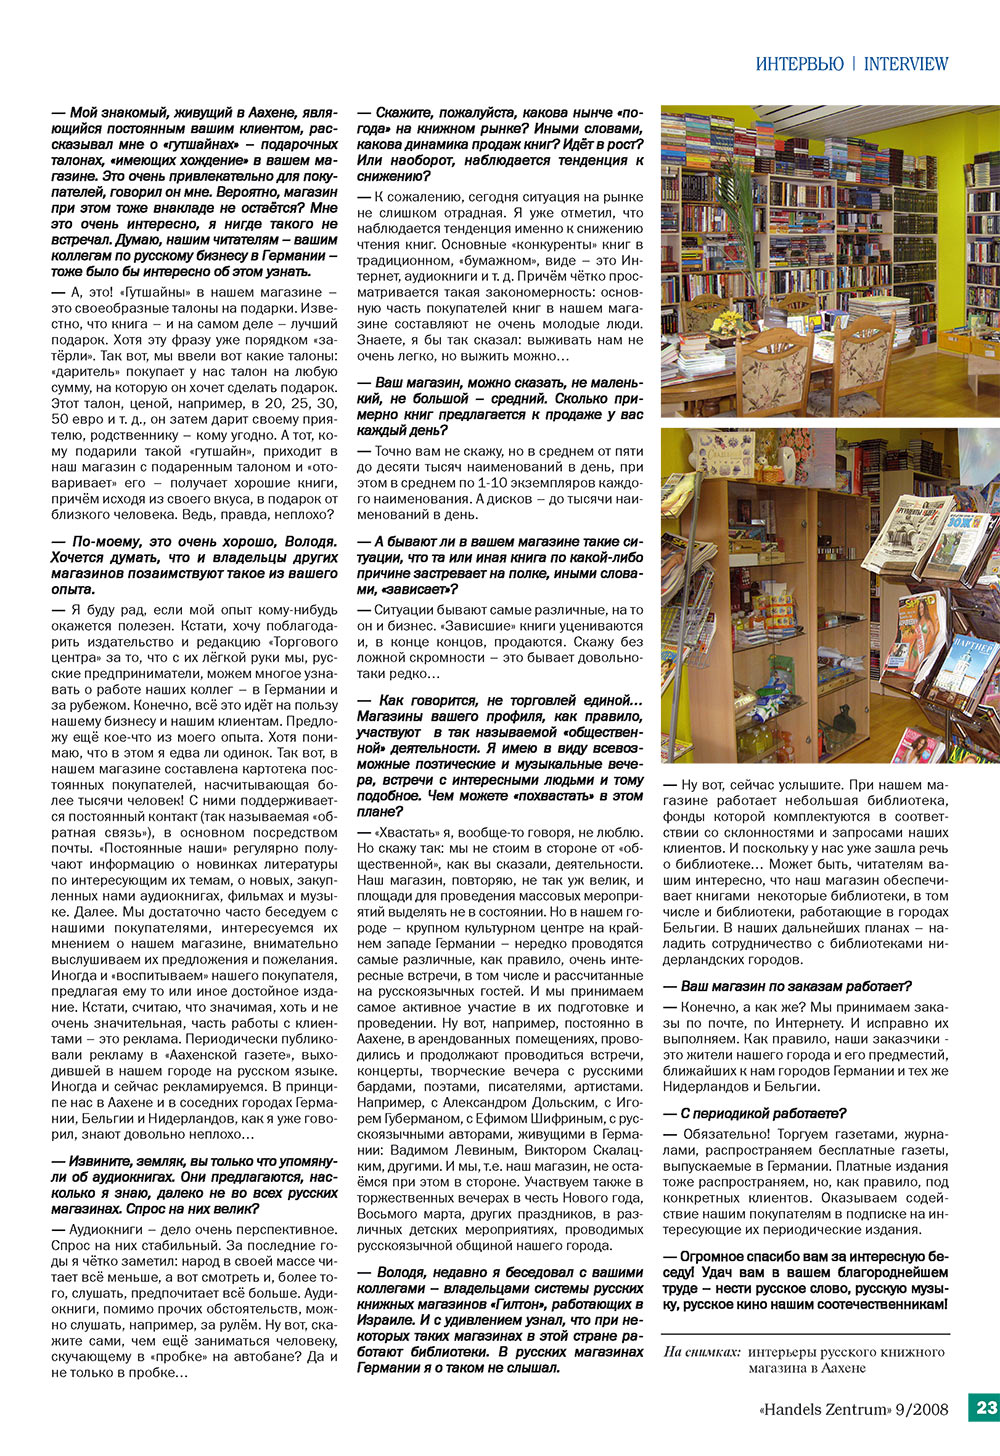 Handels Zentrum (Zeitschrift). 2008 Jahr, Ausgabe 9, Seite 23